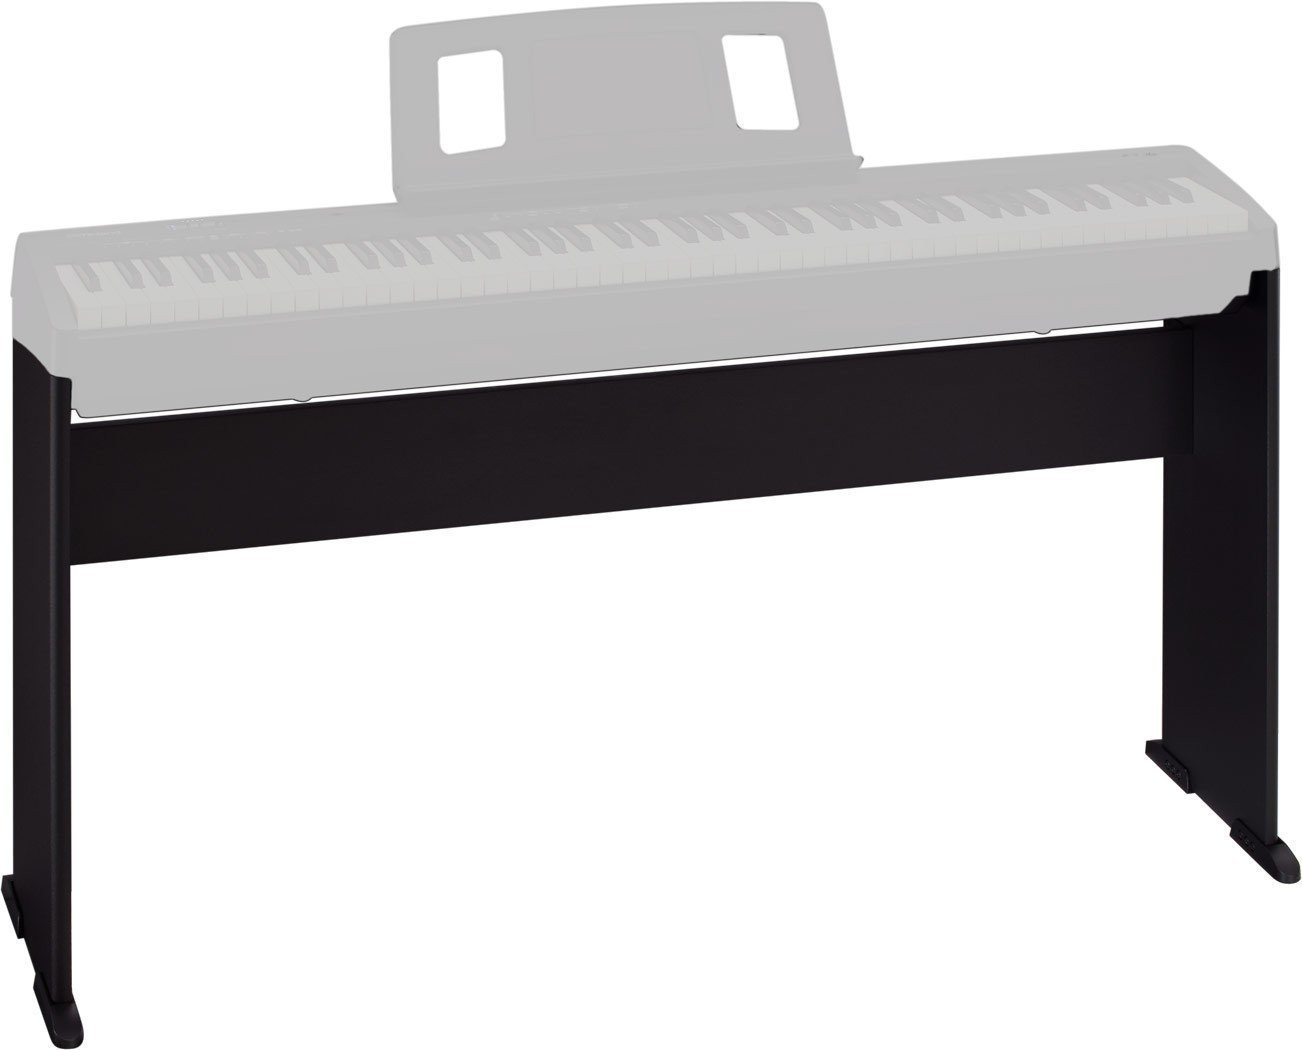 Support de clavier en bois
 Roland KSCFP10 Noir